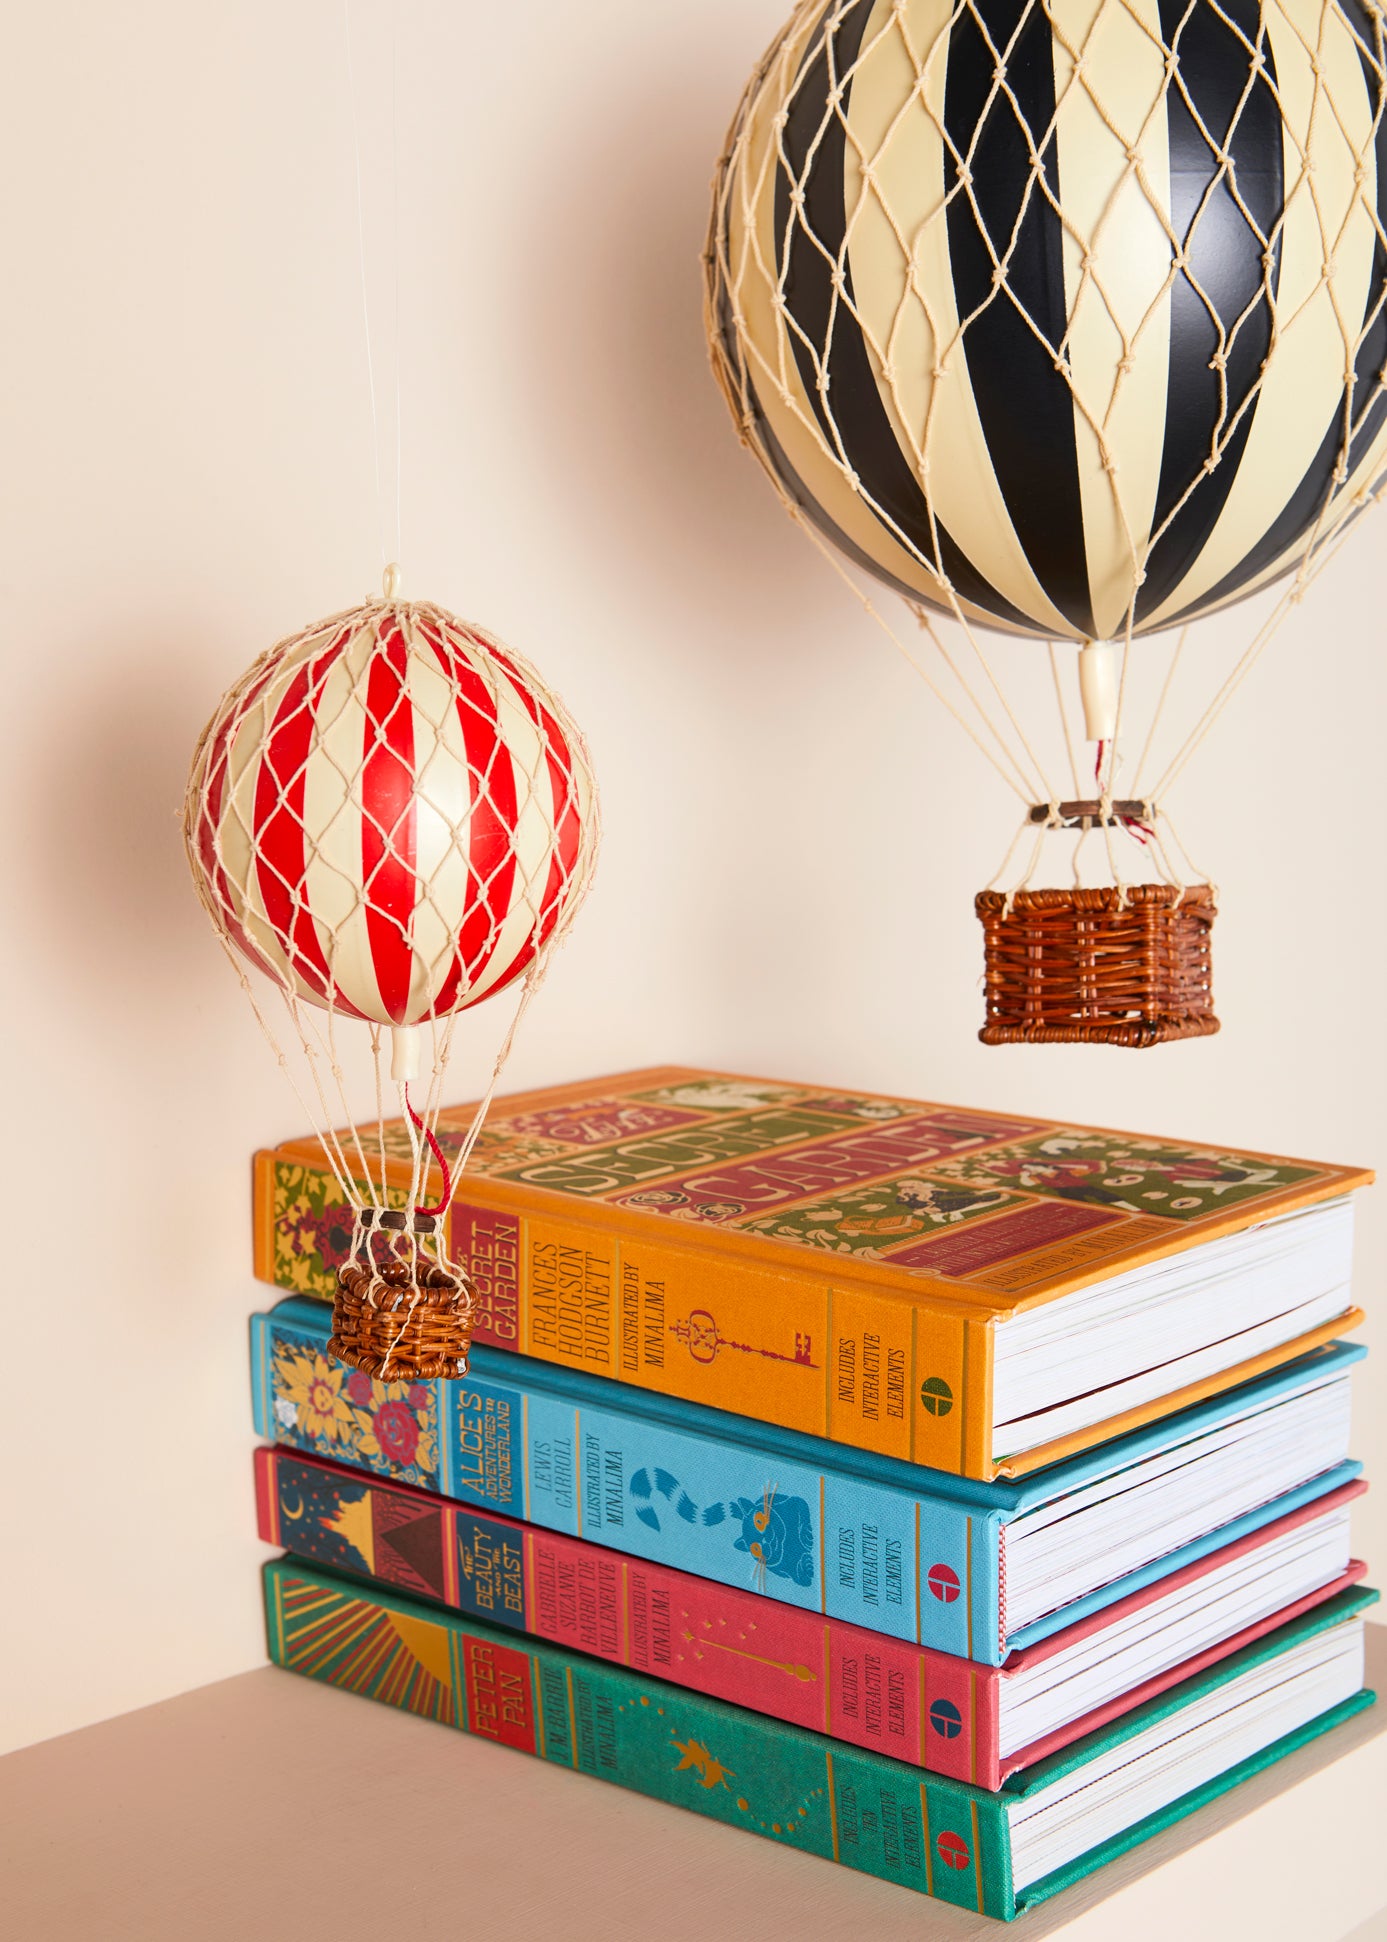 Stapel klassischer Bücher mit Spielzeug aus Heißluftballons